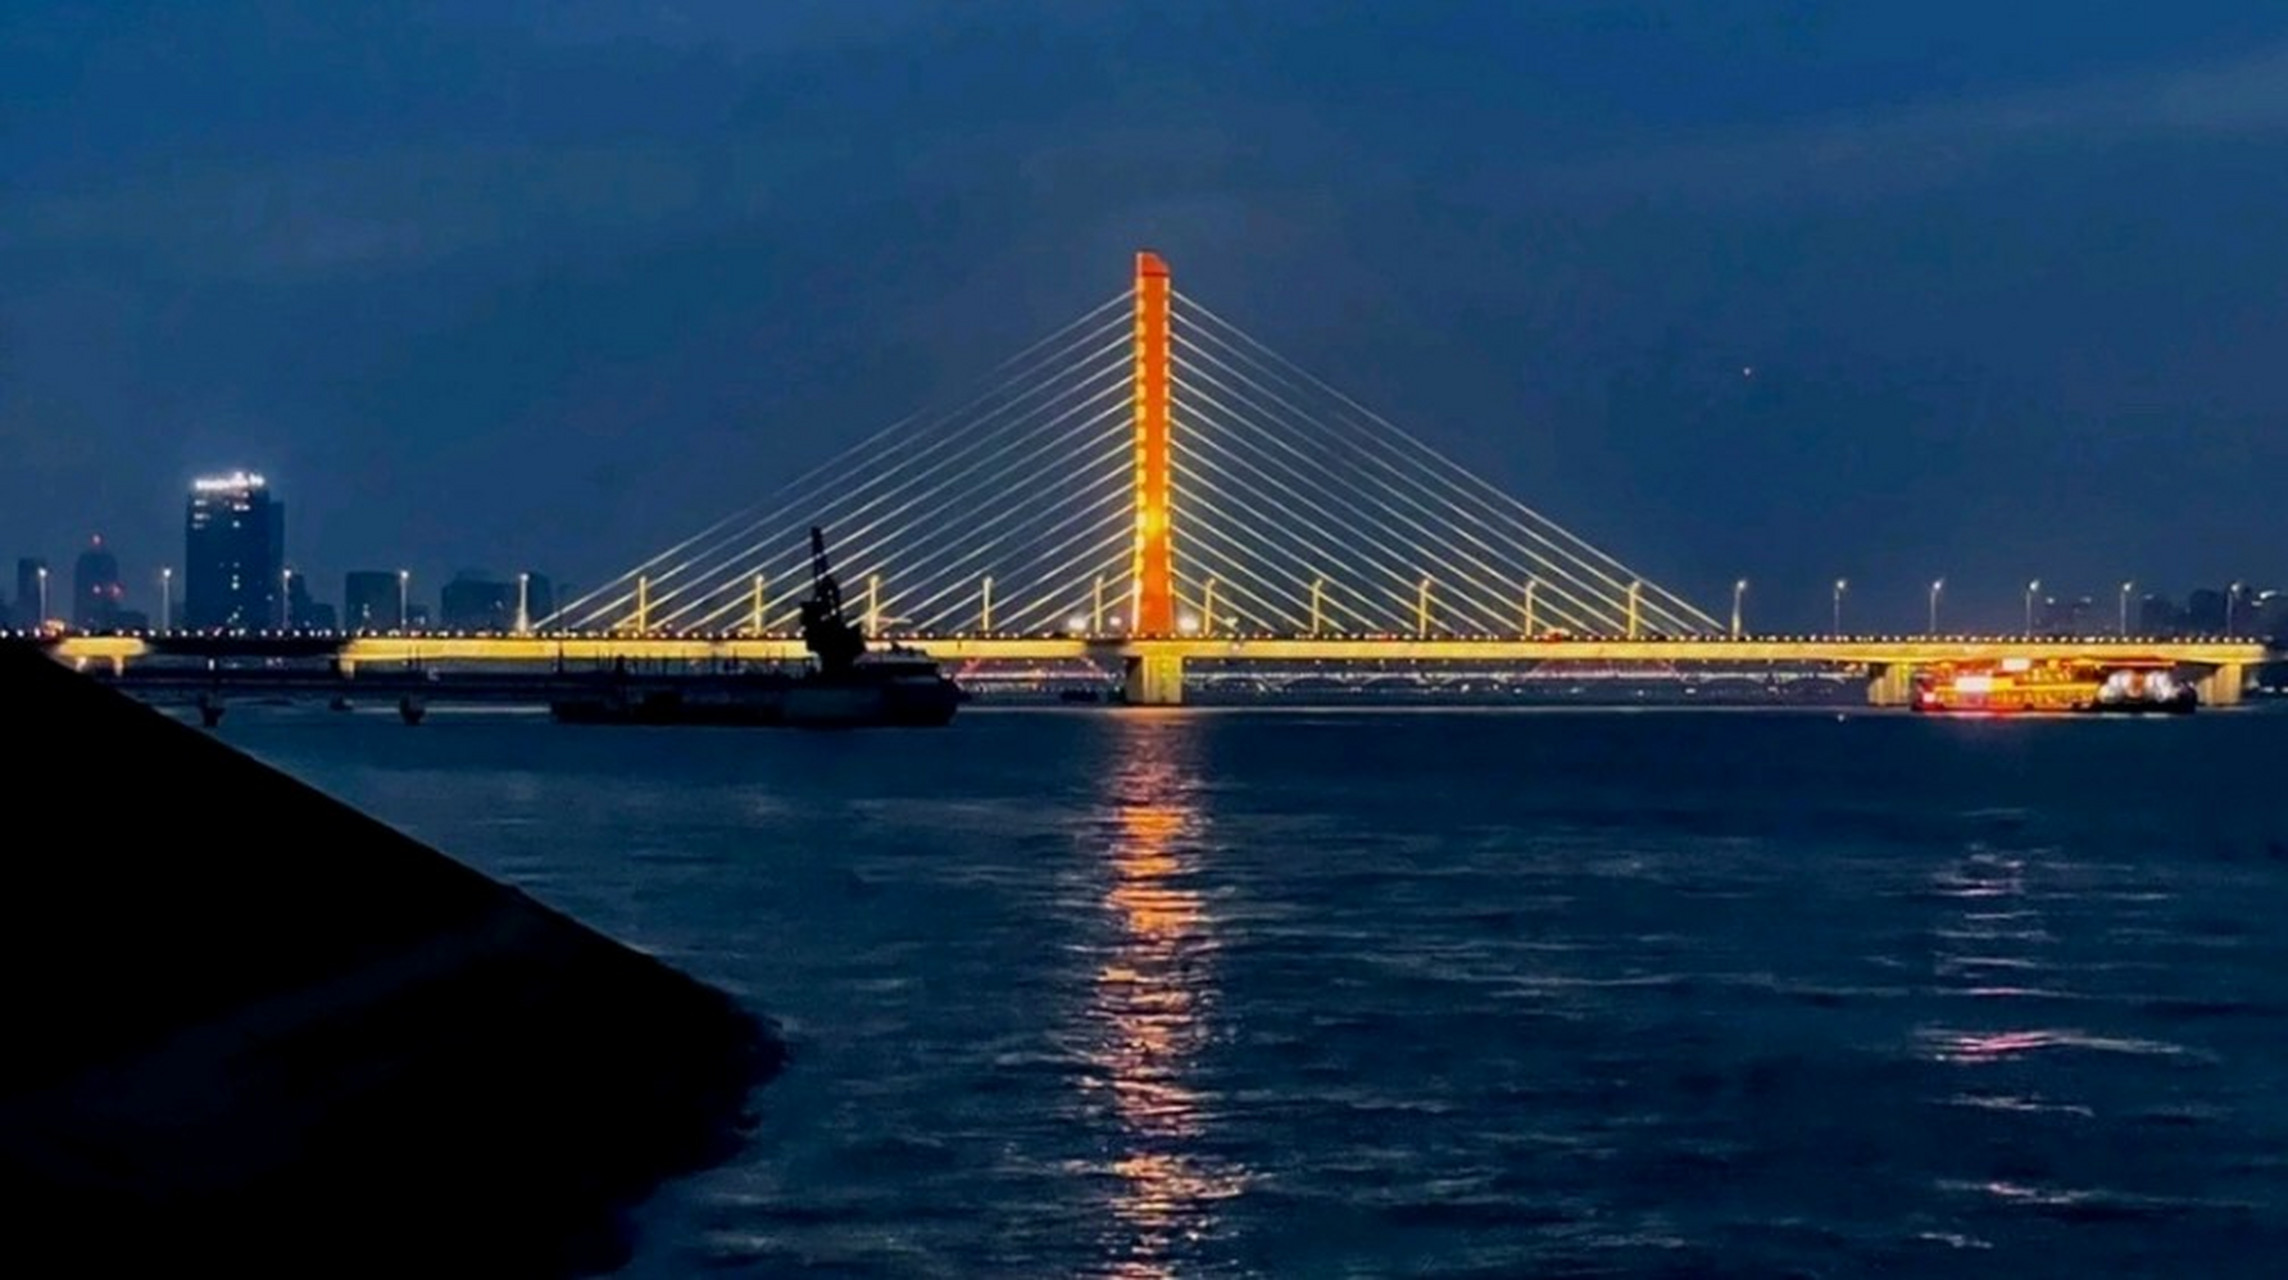 钱塘江大桥位于杭州市西湖区,是中国自行设计和建造的第一座双层铁路